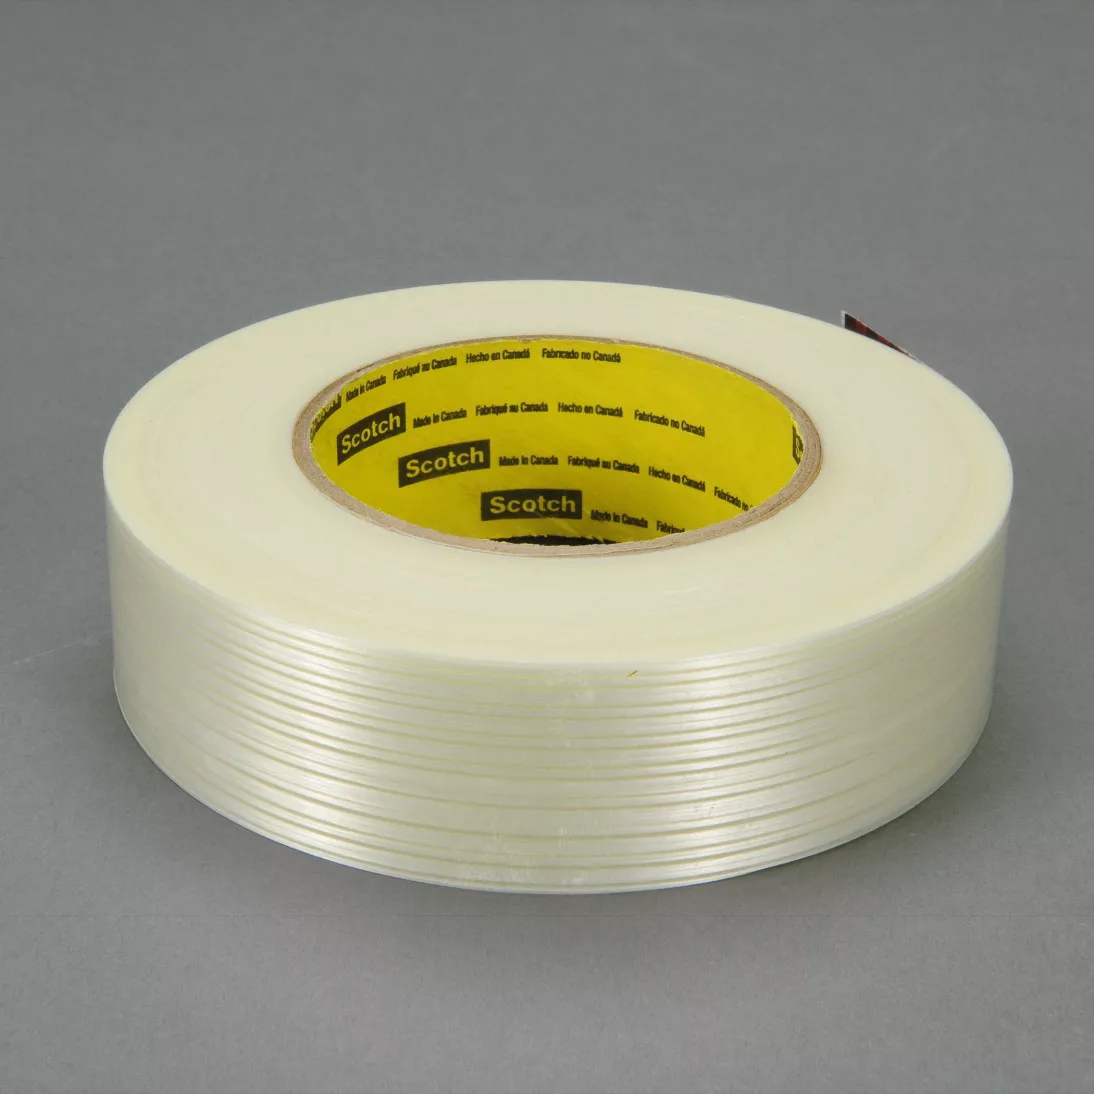 Scotch® Filament Tape 8916V, Clear, 24 mm x 55 m, 6.8 mil, 6.8 mil, 36
rolls per case